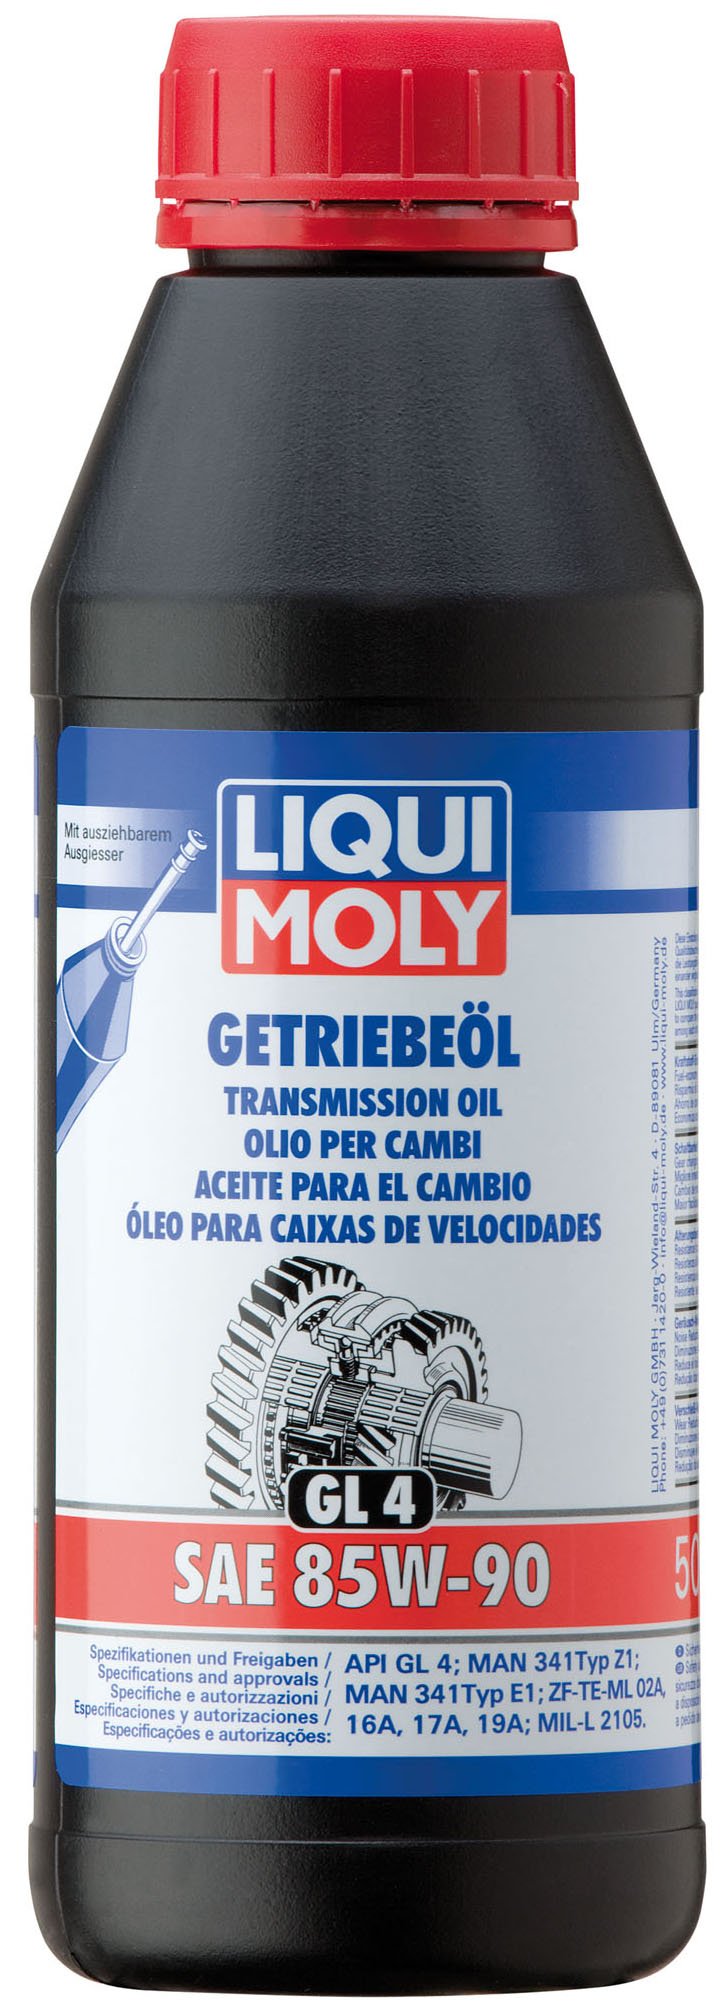 LIQUI MOLY Getriebeöl (GL4) SAE 85W-90 | 500 ml | Getriebeöl | Hydrauliköl | Art.-Nr.: 1403 von Liqui Moly